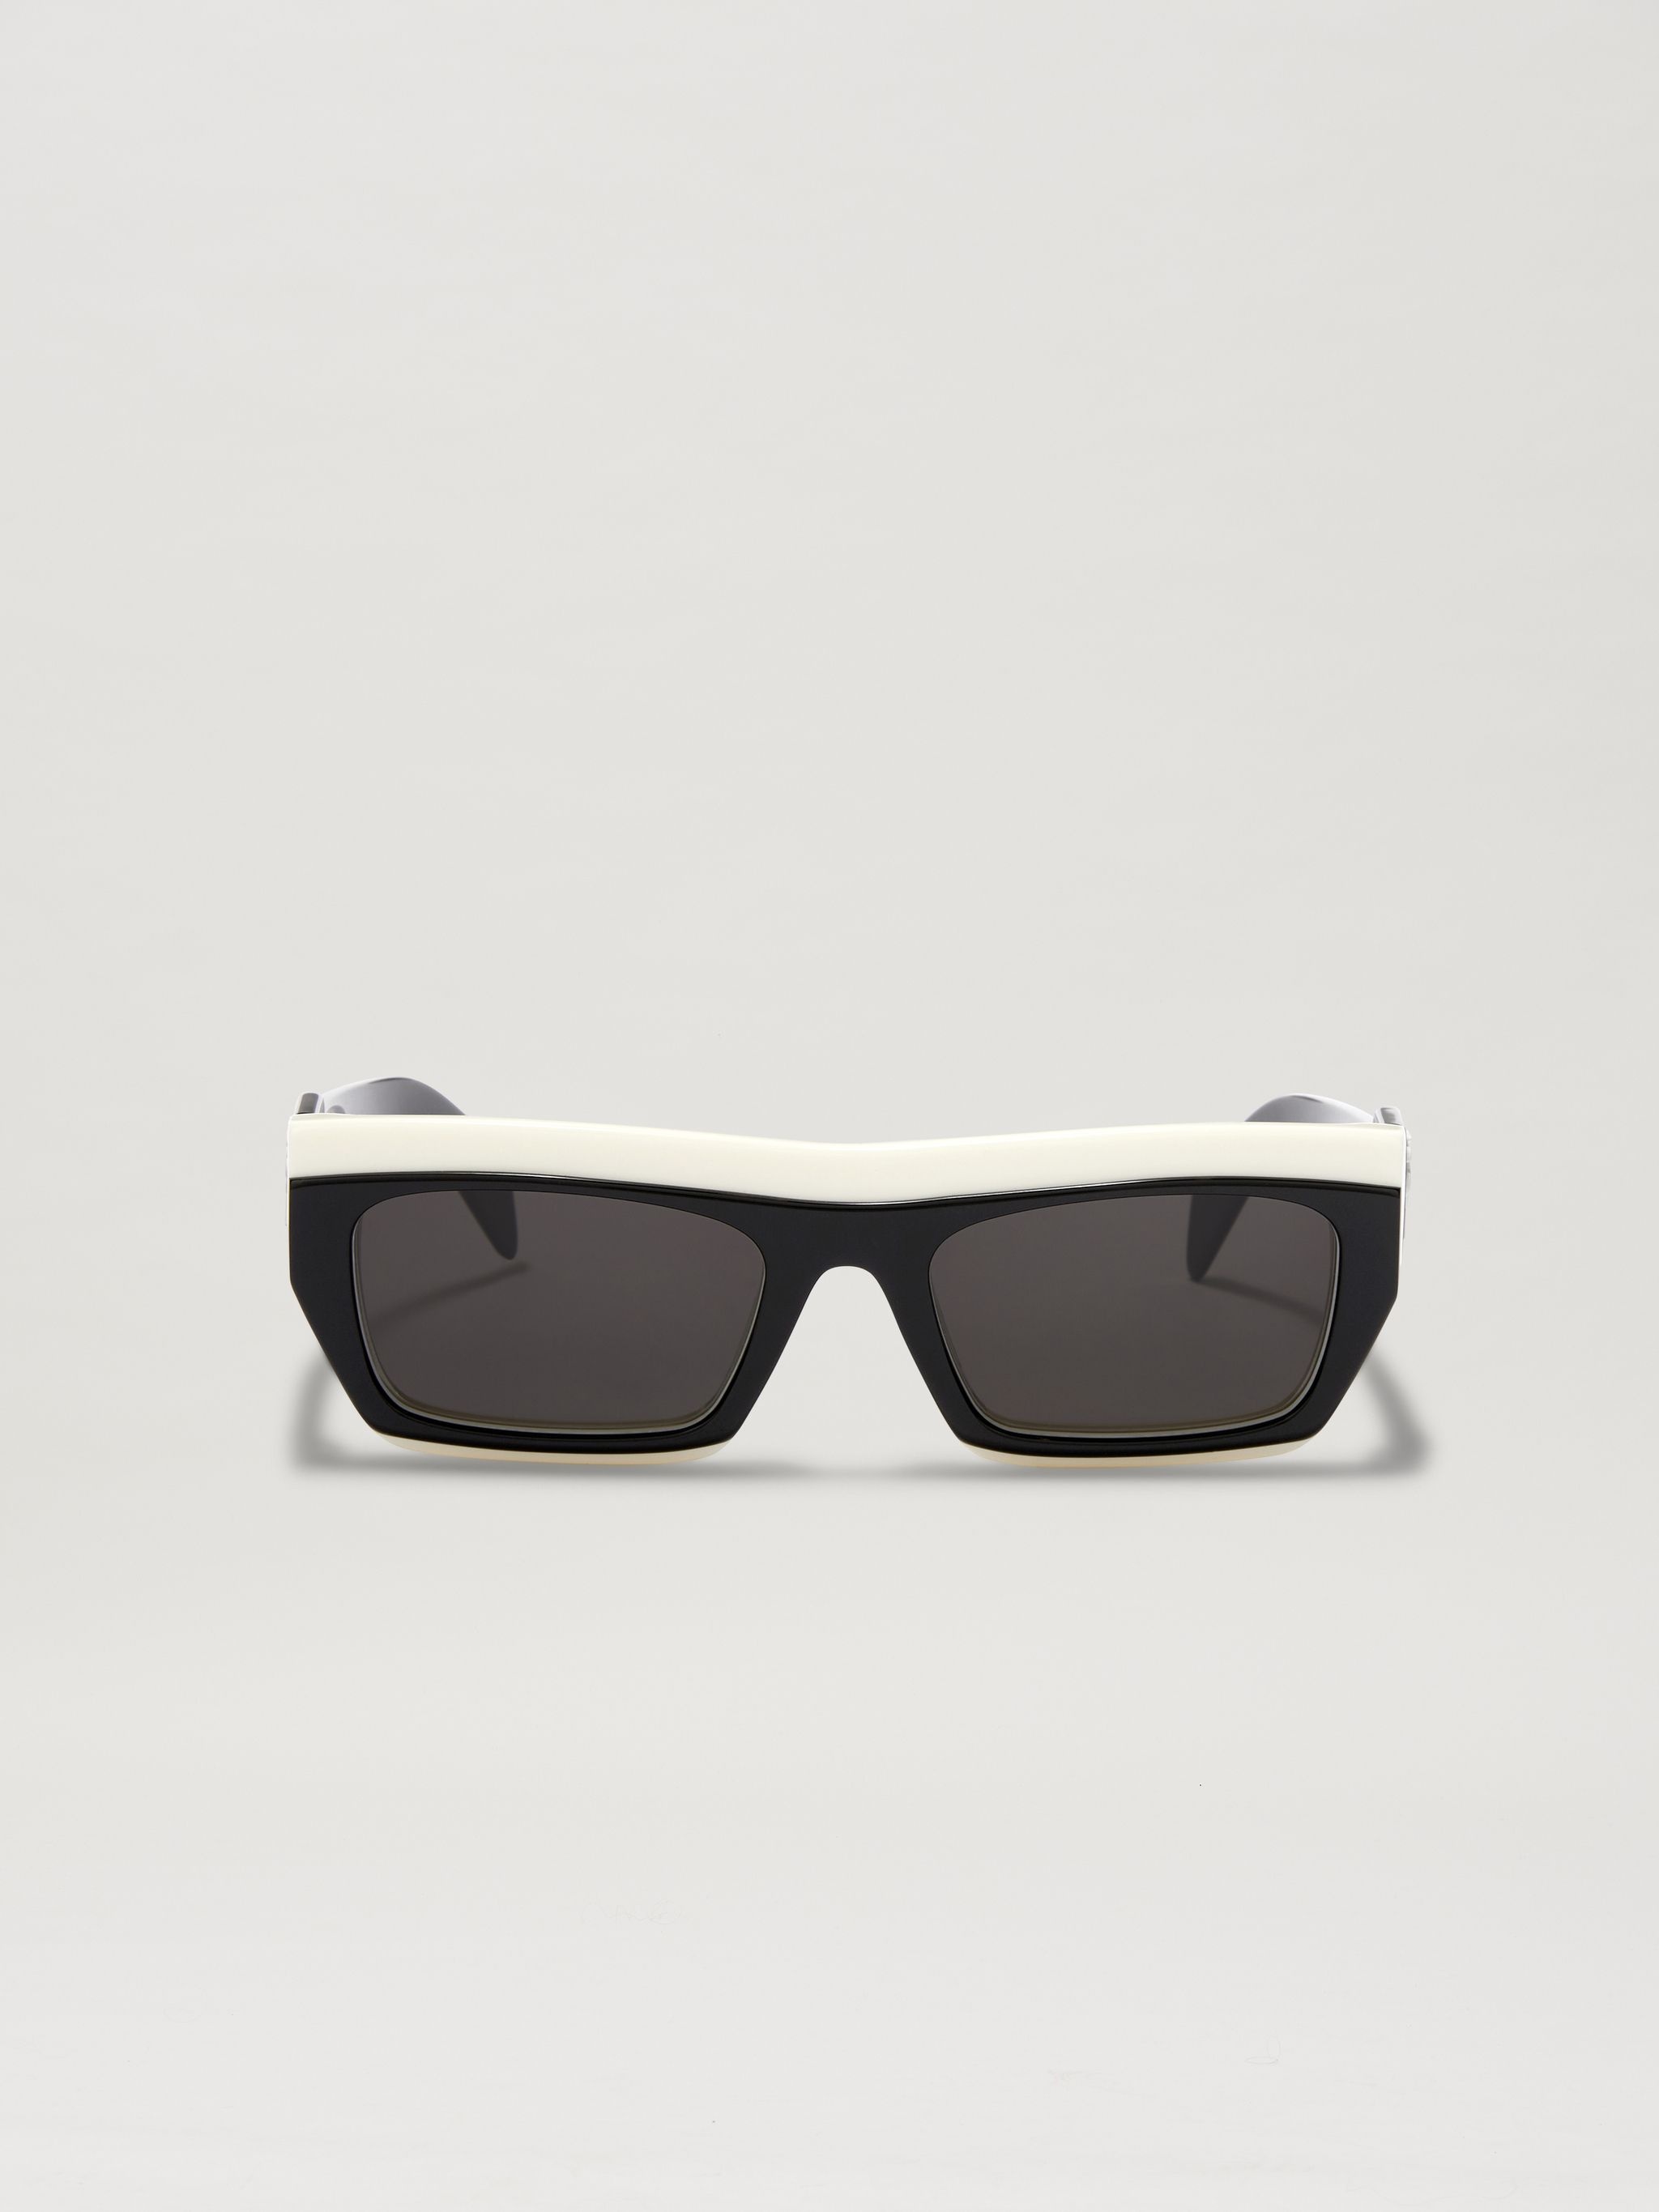 Empire Sunglasses - 6